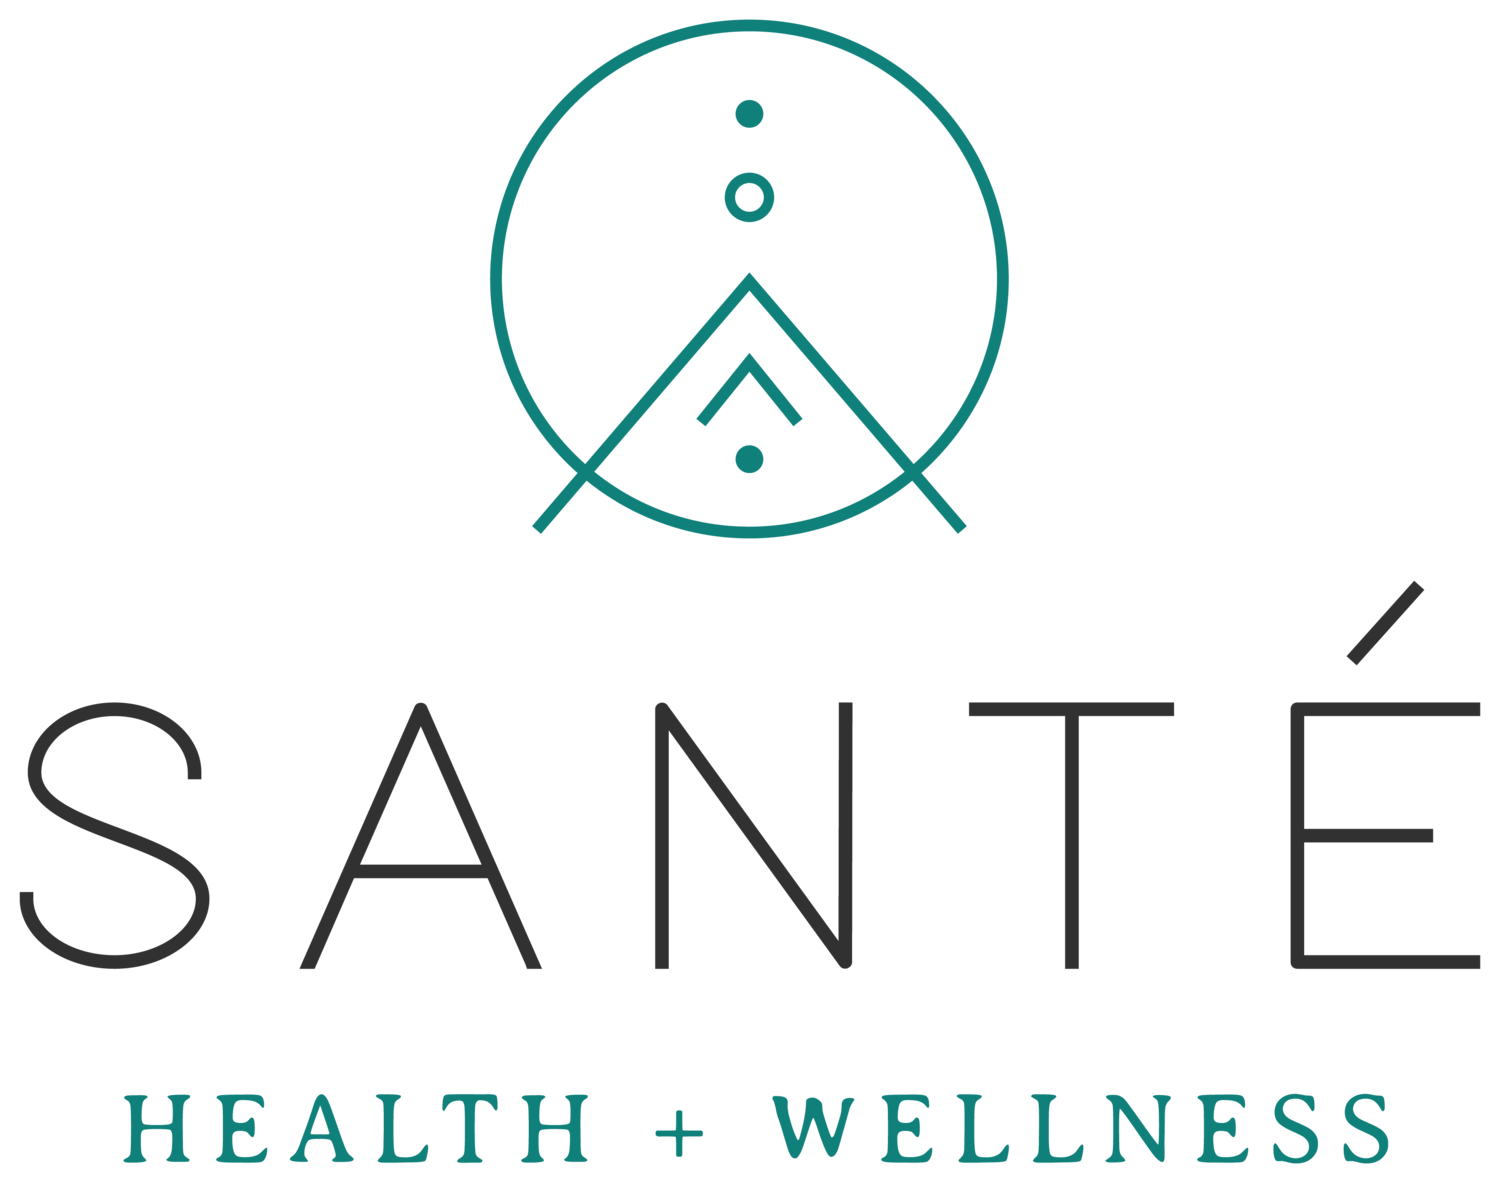 Santé Health and Wellness